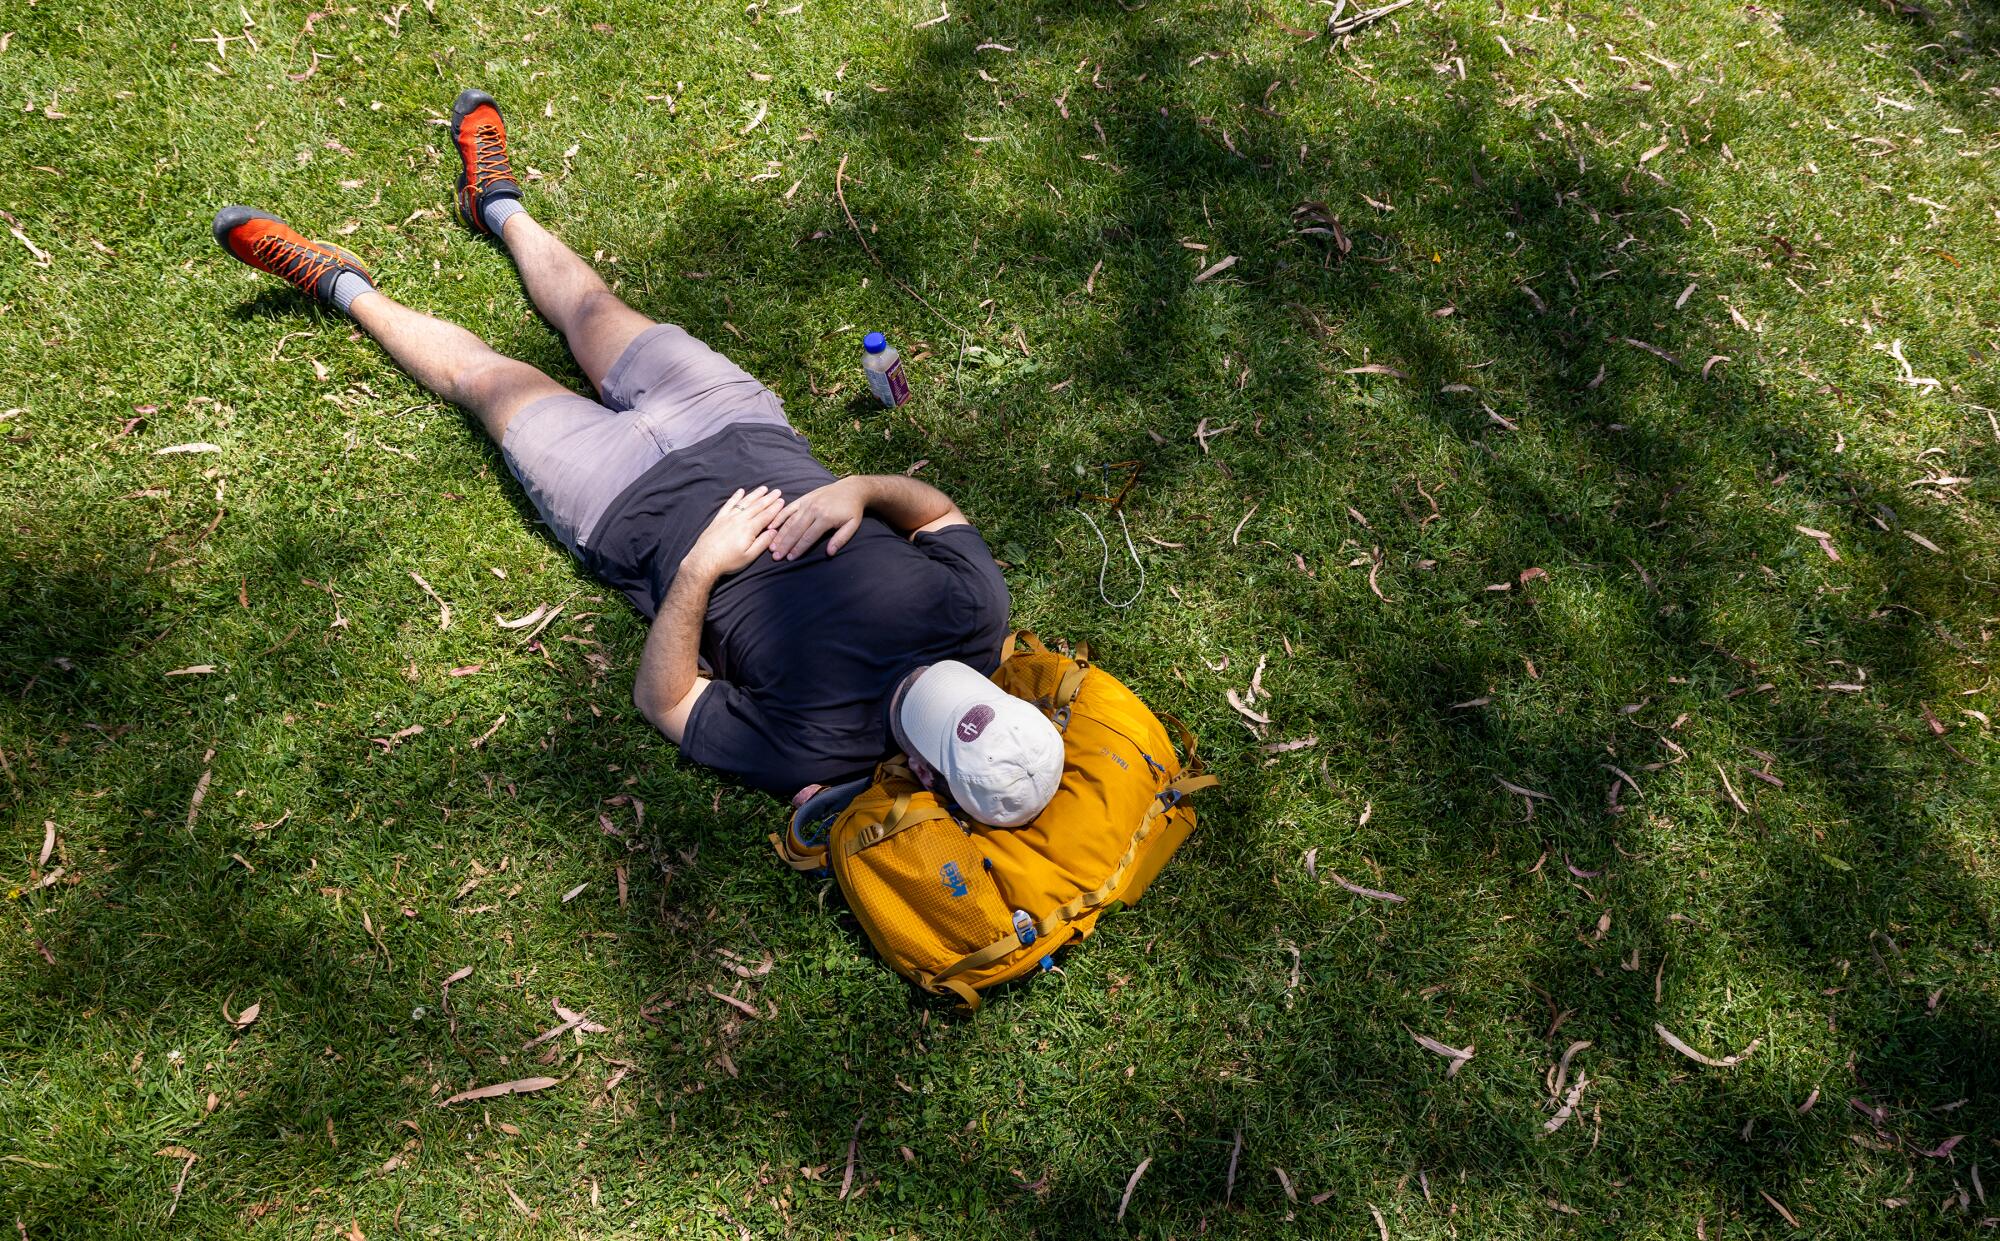 Un hombre está tumbado en el césped, usando su mochila amarilla como almohada.